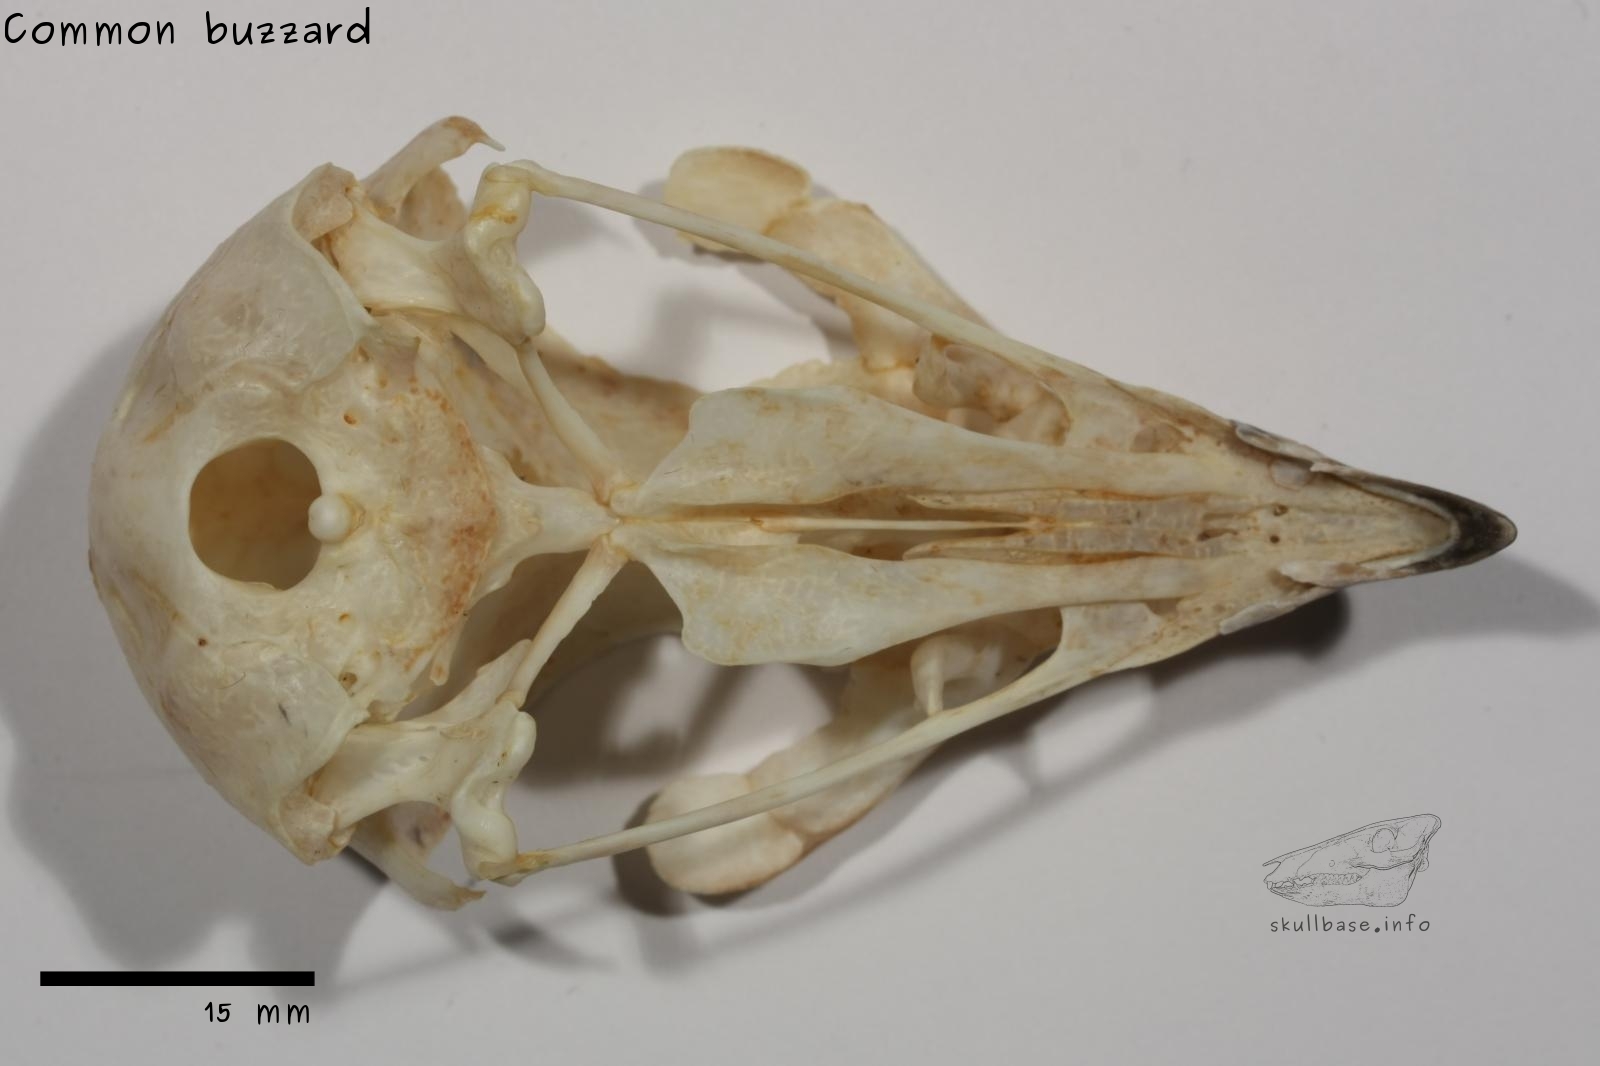 Common buzzard (Buteo buteo) skull ventral view